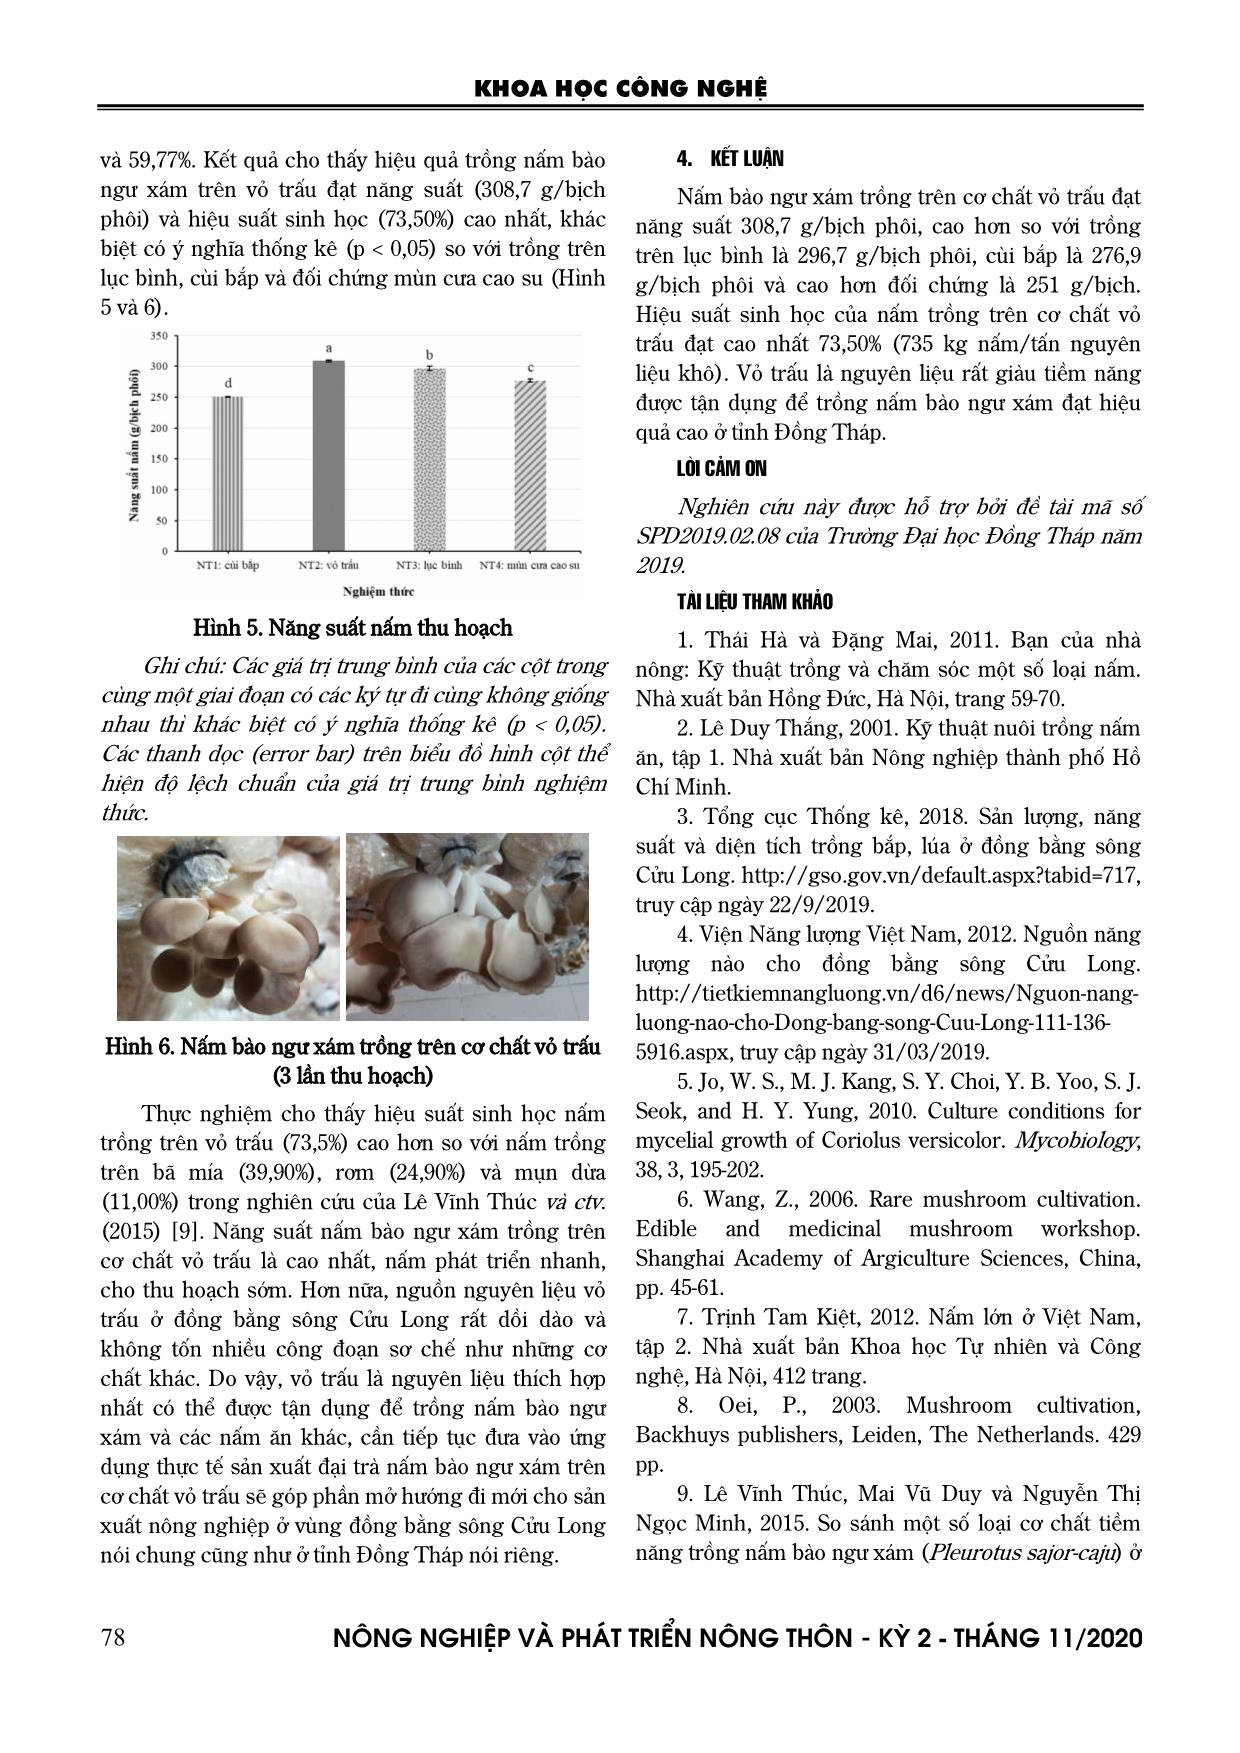 Nghiên cứu thử nghiệm trồng nấm bào ngư xám (Pleurotus sajor-caju (Fr.) Sing.) trên phụ phế phẩm cùi bắp, vỏ trấu và lục bình trang 4